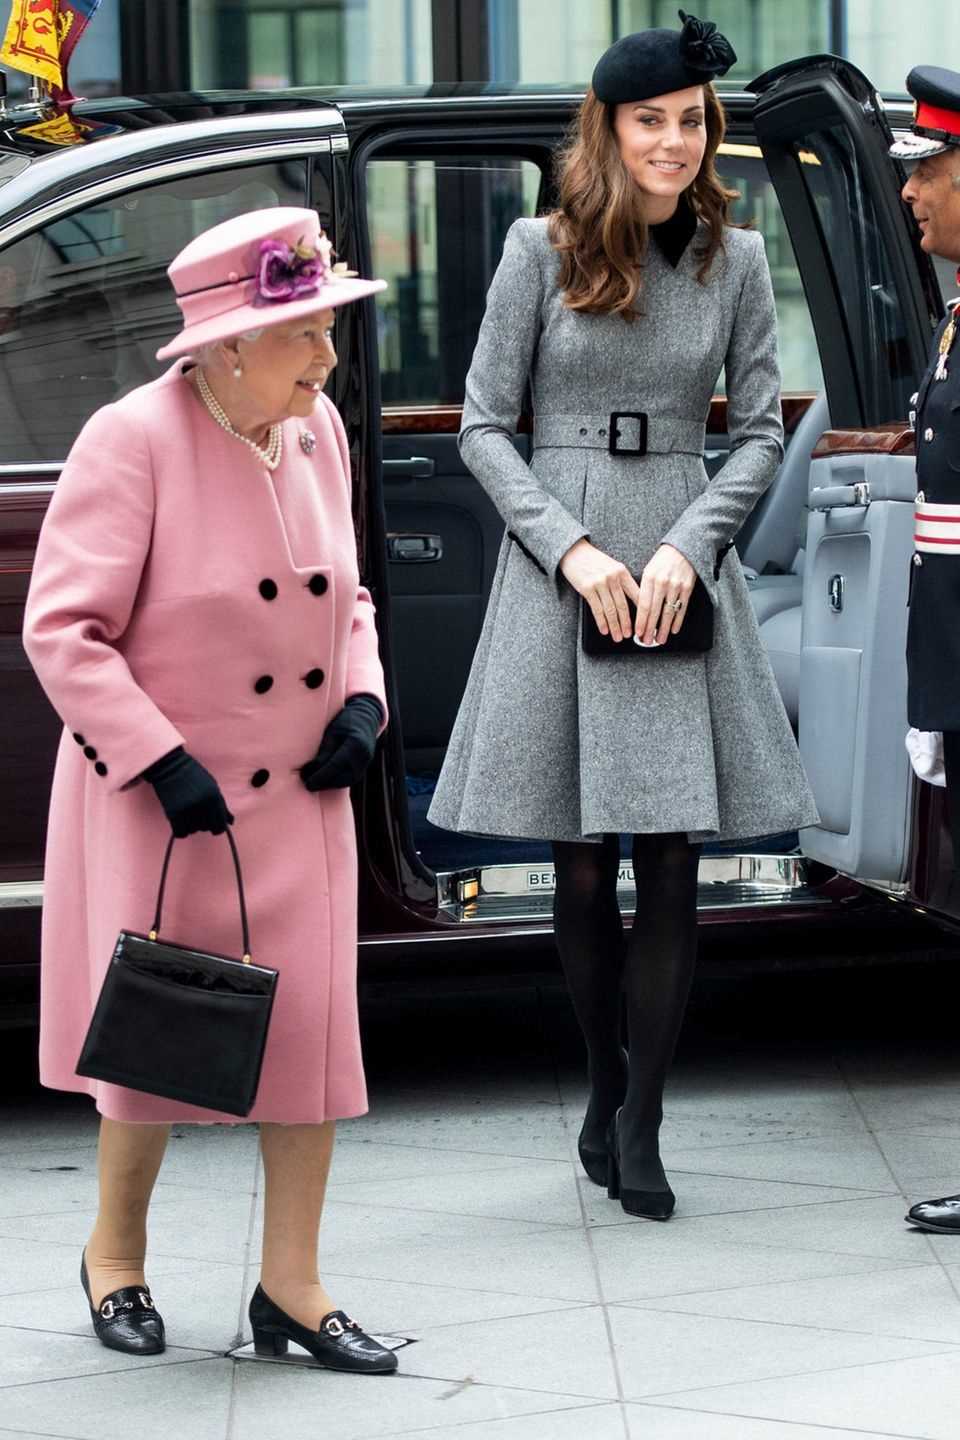 19. März 2019  Royale Frauen-Power: Queen Elizabeth und Herzogin Catherine besuchen das King's College in London. Die Medien sind begeistert von dem Duo, dem ein sehr gutes und respektvolles Verhältnis nachgesagt wird. PR, die der Palast gebrauchen kann:  Vier Tage zuvor hatte er verkündet, dass "die Königin der Schaffung eines neuen Haushalts für den Herzog und die Herzogin von Sussex (...) zugestimmt hat." Heißt: Harry und Meghan werden nicht länger, wie Kate und William, vom Kensington Palast vertreten und bekommen ein eigenes Büro im Buckingham Palast mit eigenen Mitarbeitern. Auch einen neuen Instagram-Account wird das Paar sein Eigen nennen dürfen.  Obwohl der Palast betont, dass dieser Schritt lange geplant gewesen sei, sehen Royal-Fans und Medien in ihm einen weiteren Beweis für das vermeintlich schlechte Verhältnis der Paare Sussex und Cambridge. 